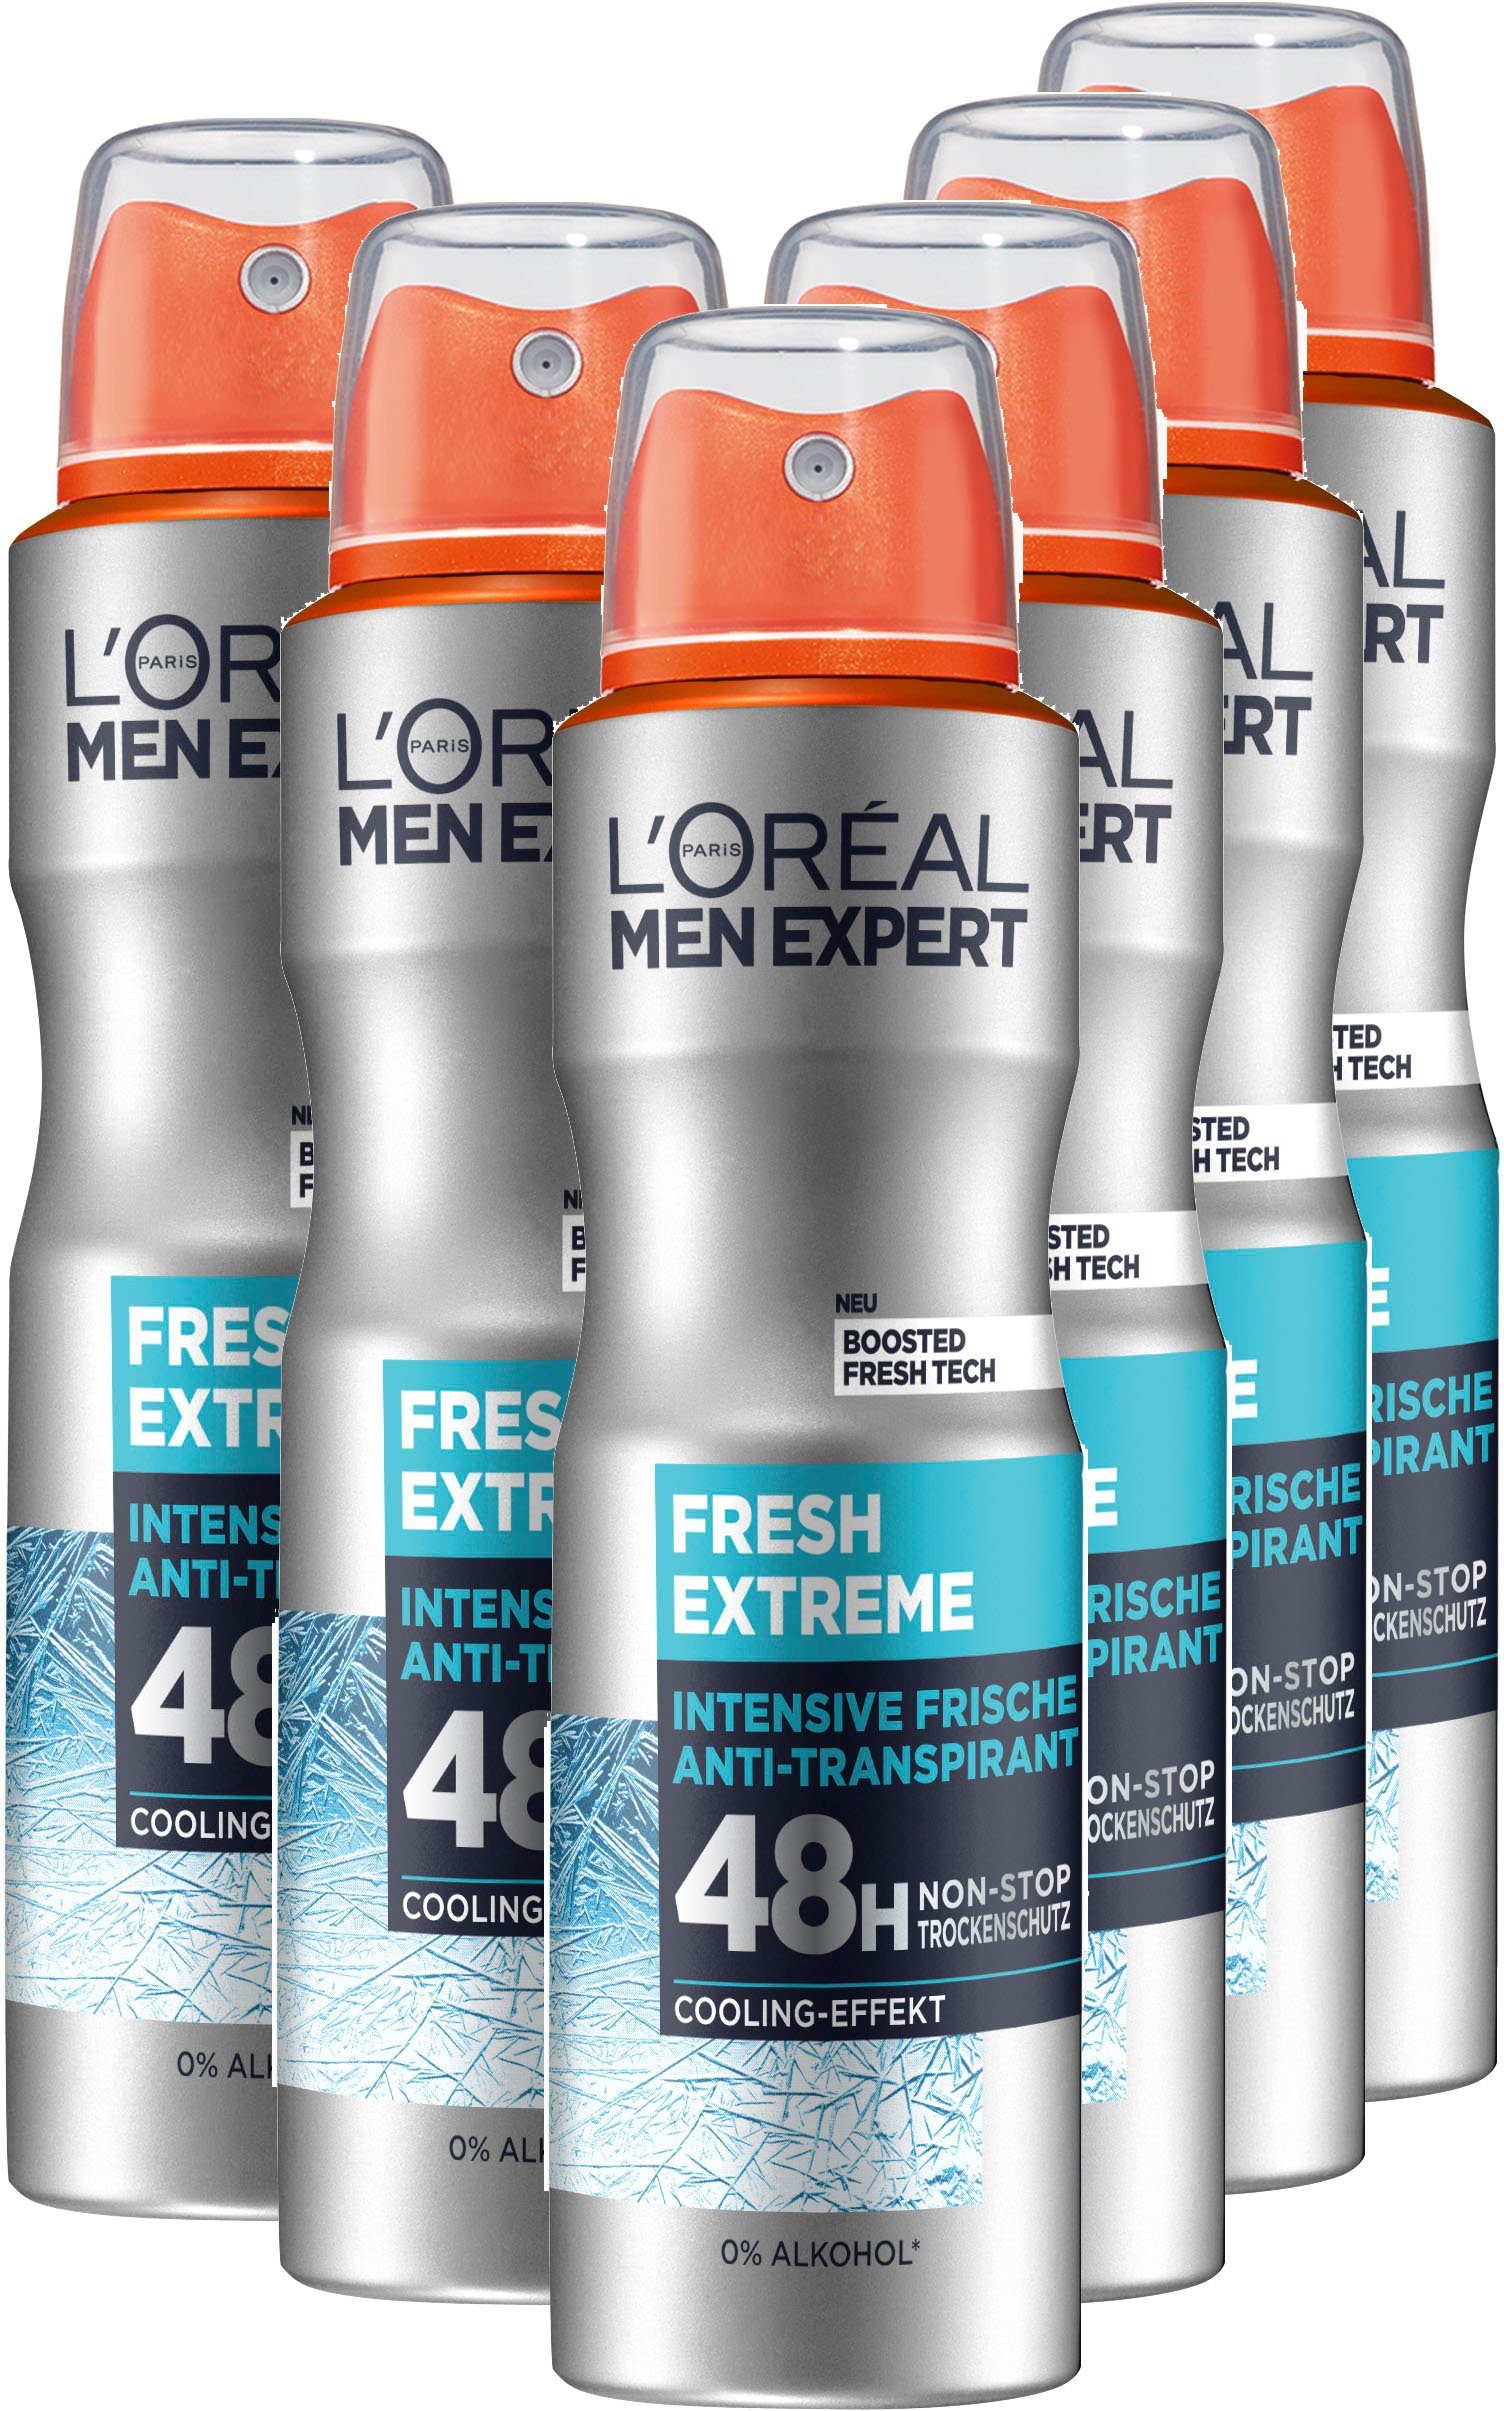 Packung, 6-tlg. Fresh EXPERT Extreme, Deo-Spray MEN Spray PARIS L'ORÉAL Deo